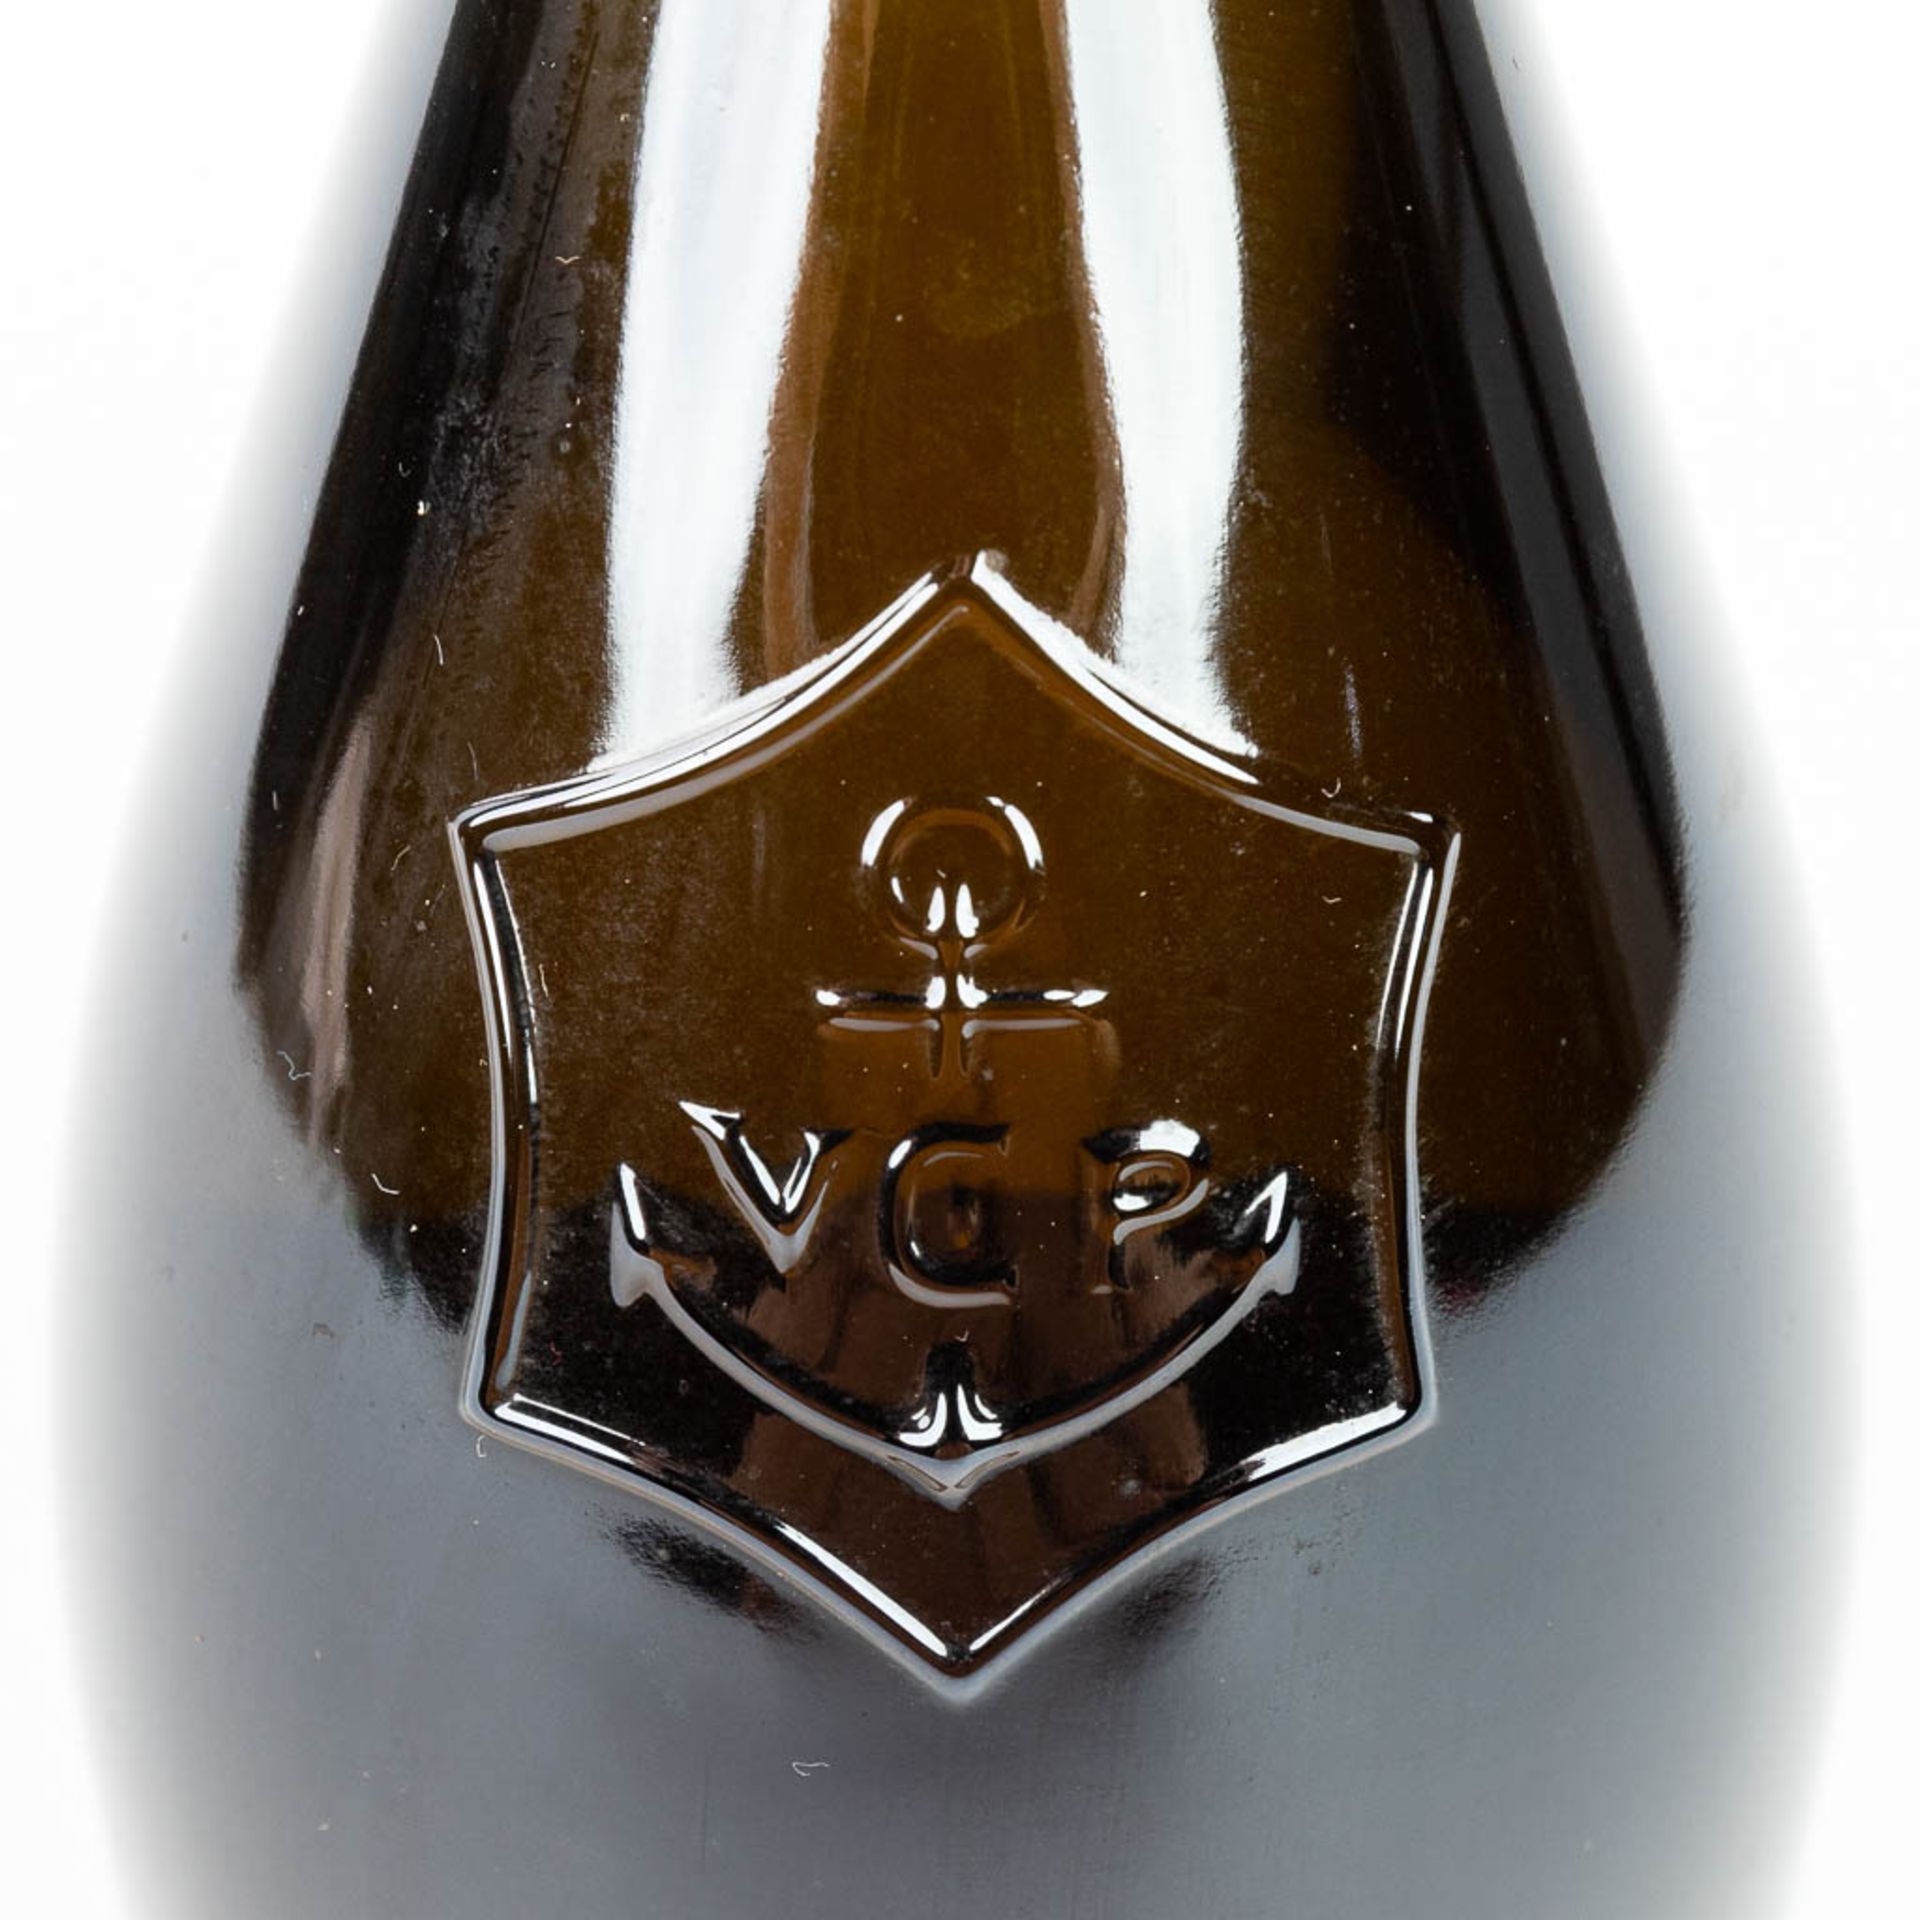 A bottle of Veuve Clicquot Ponsardin 1996 'La Grande Dame' limited edition by Emilio Pucci. - Bild 4 aus 14